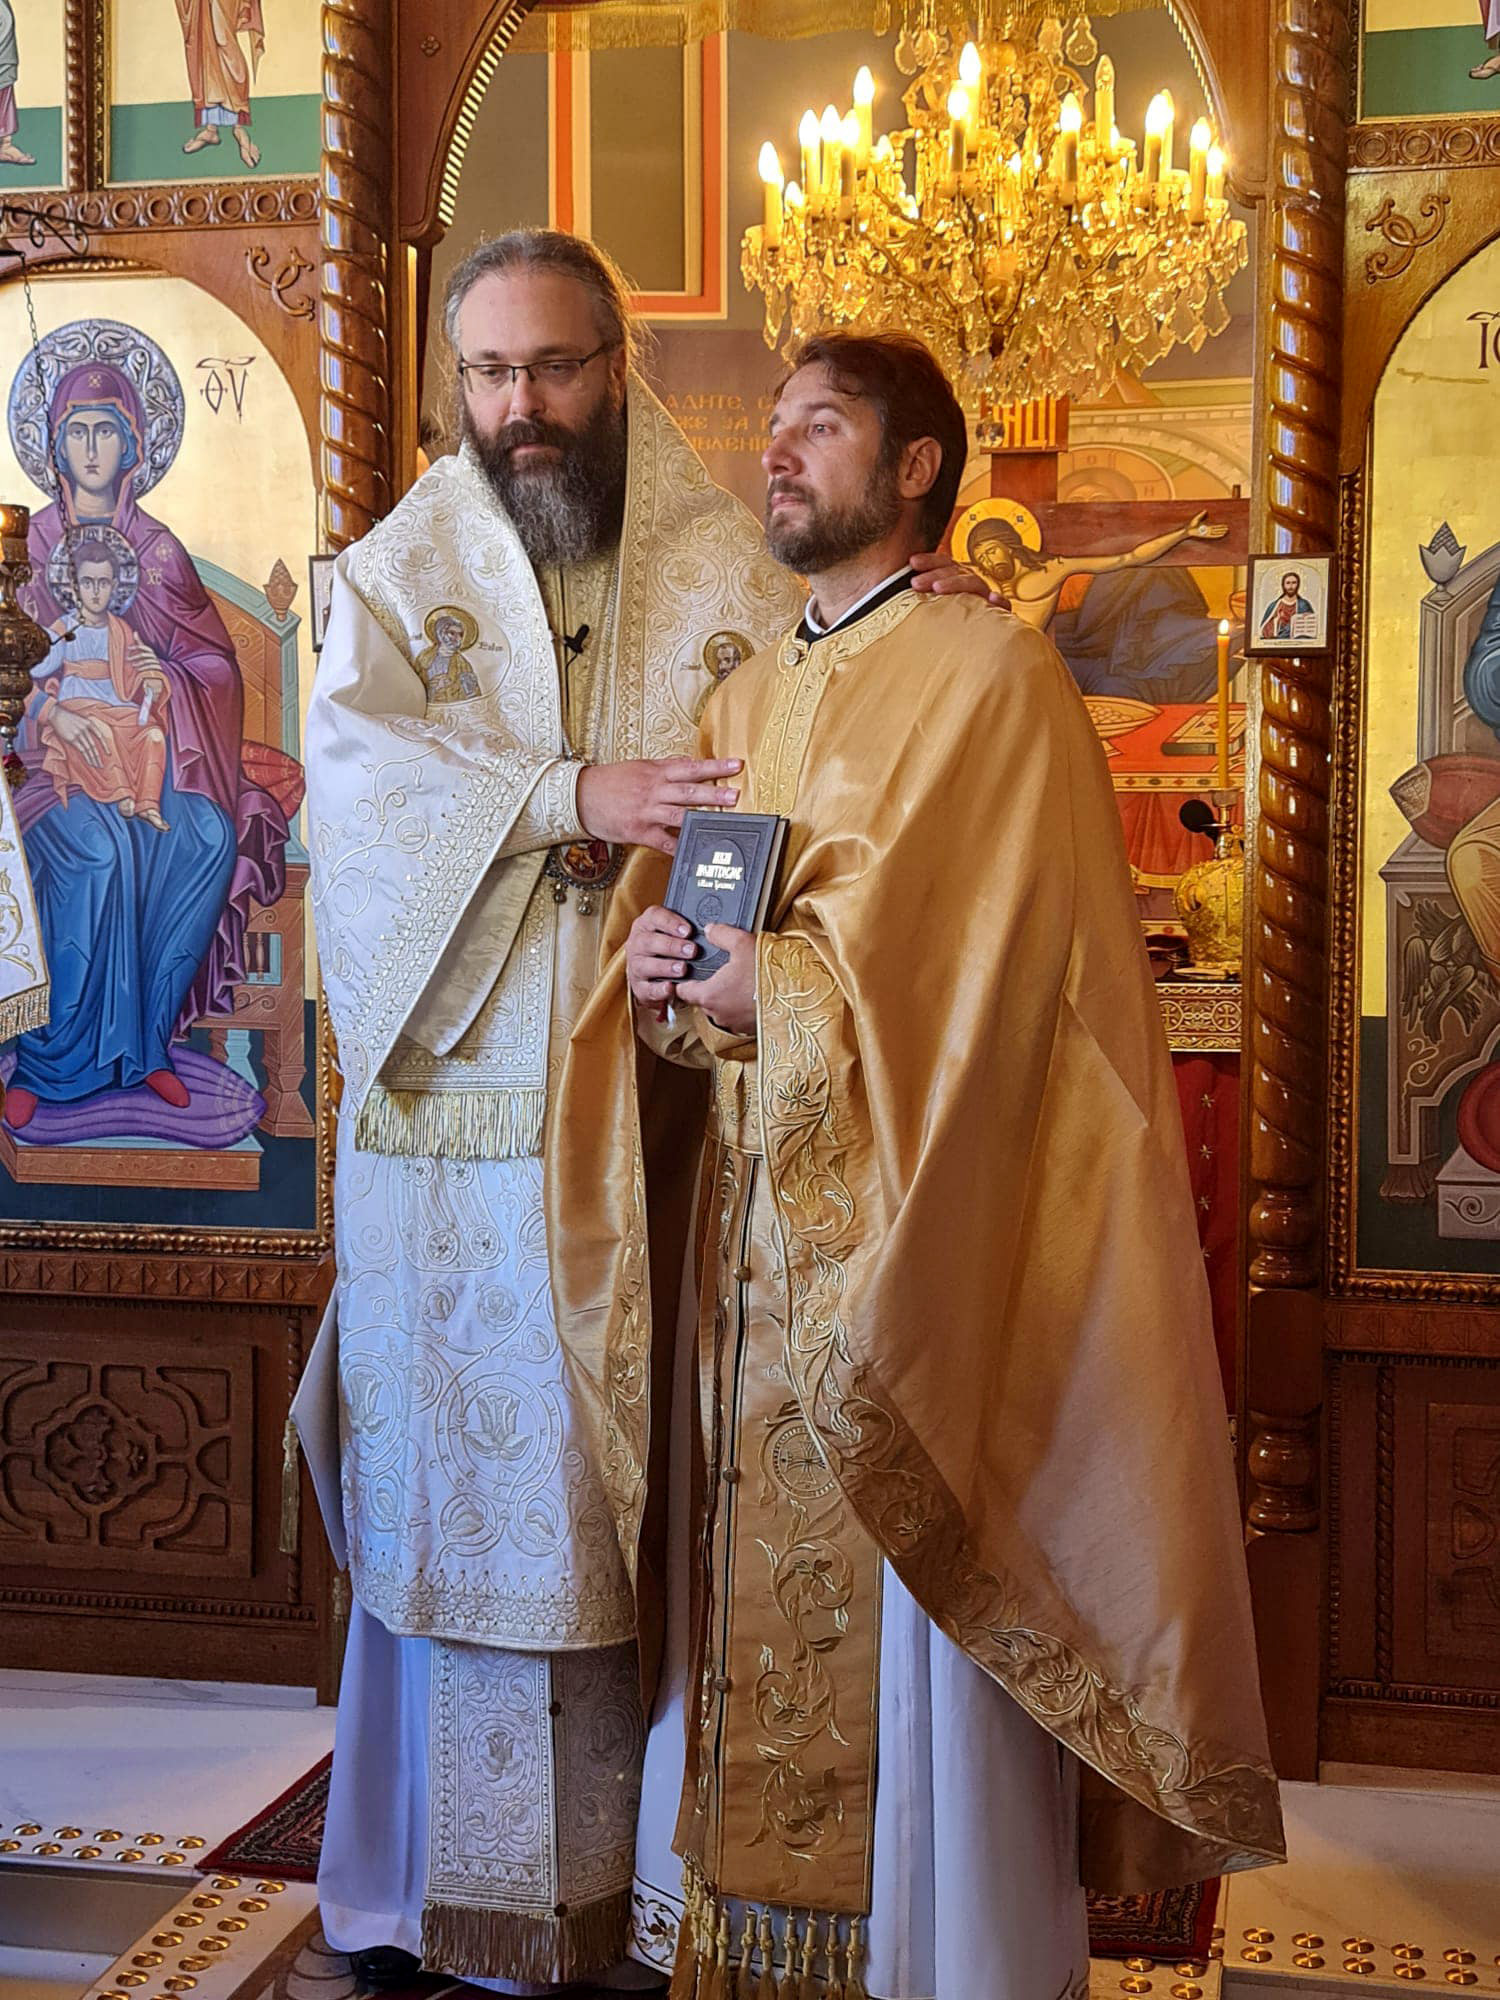 Radost pravoslavlja i jedinstva